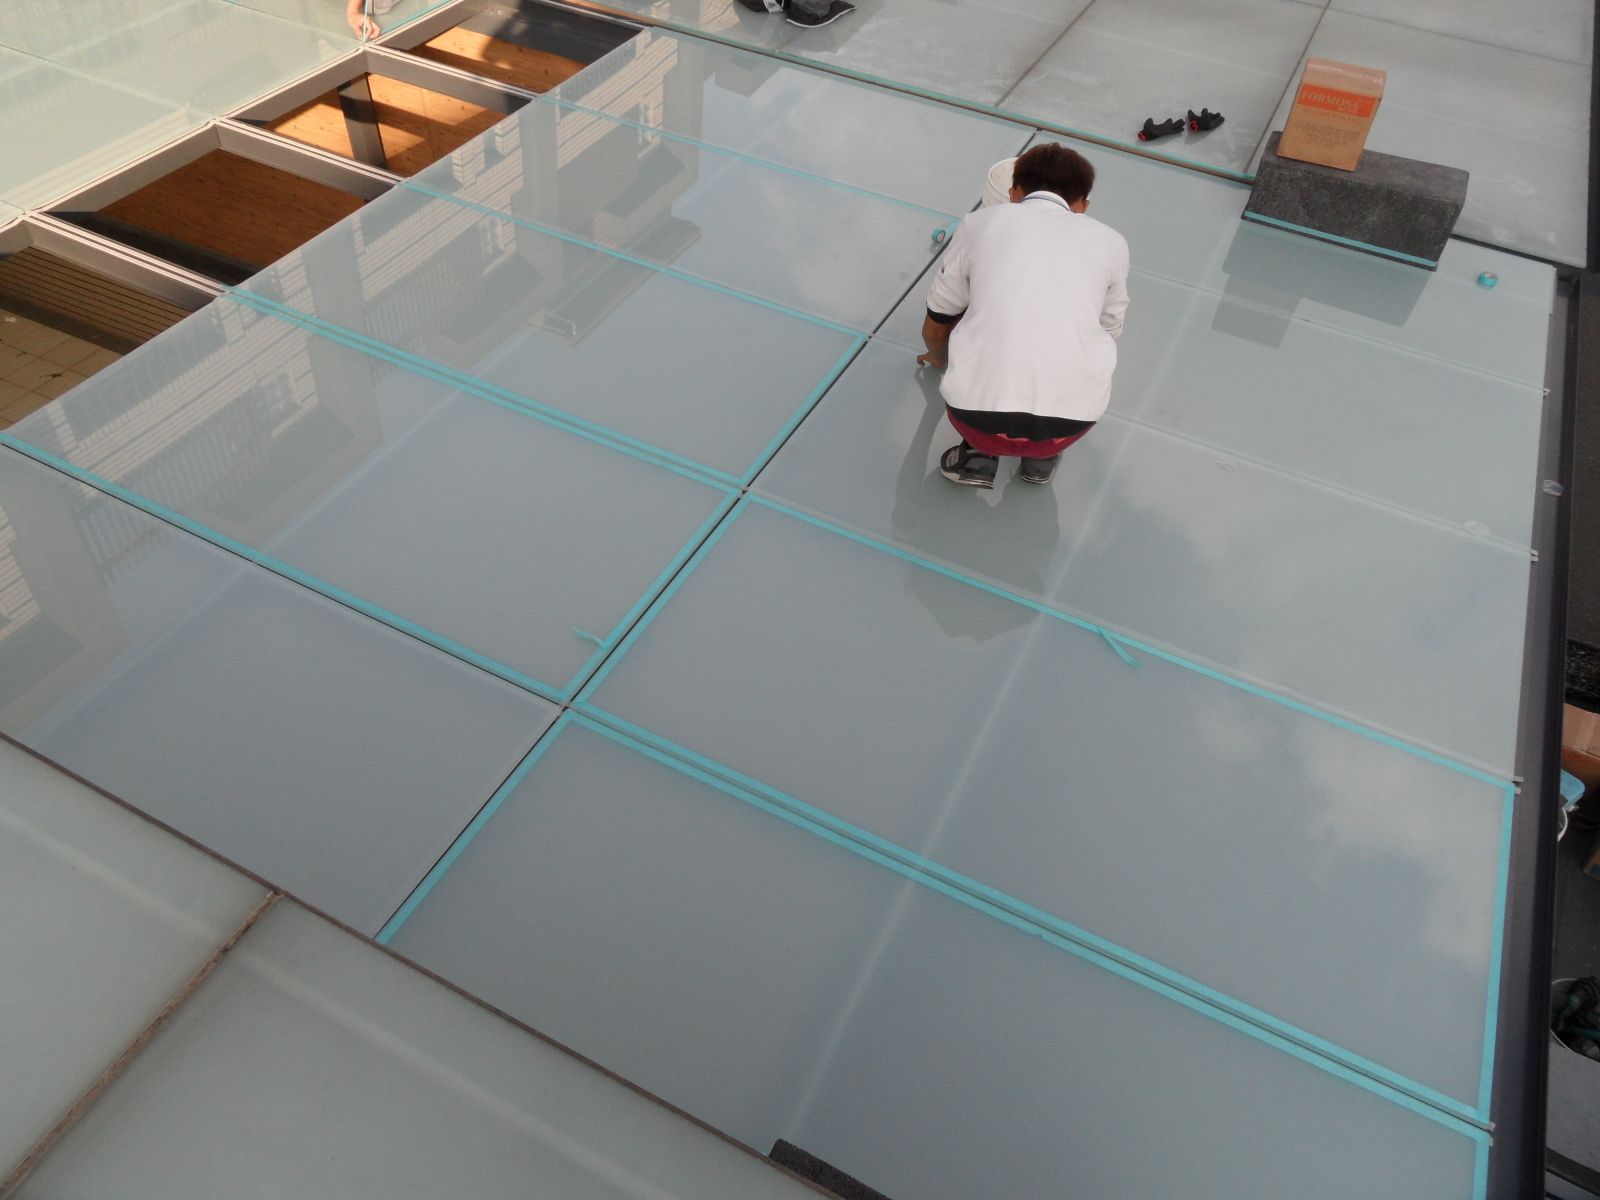 屋頂玻璃採用5+5膠合玻璃